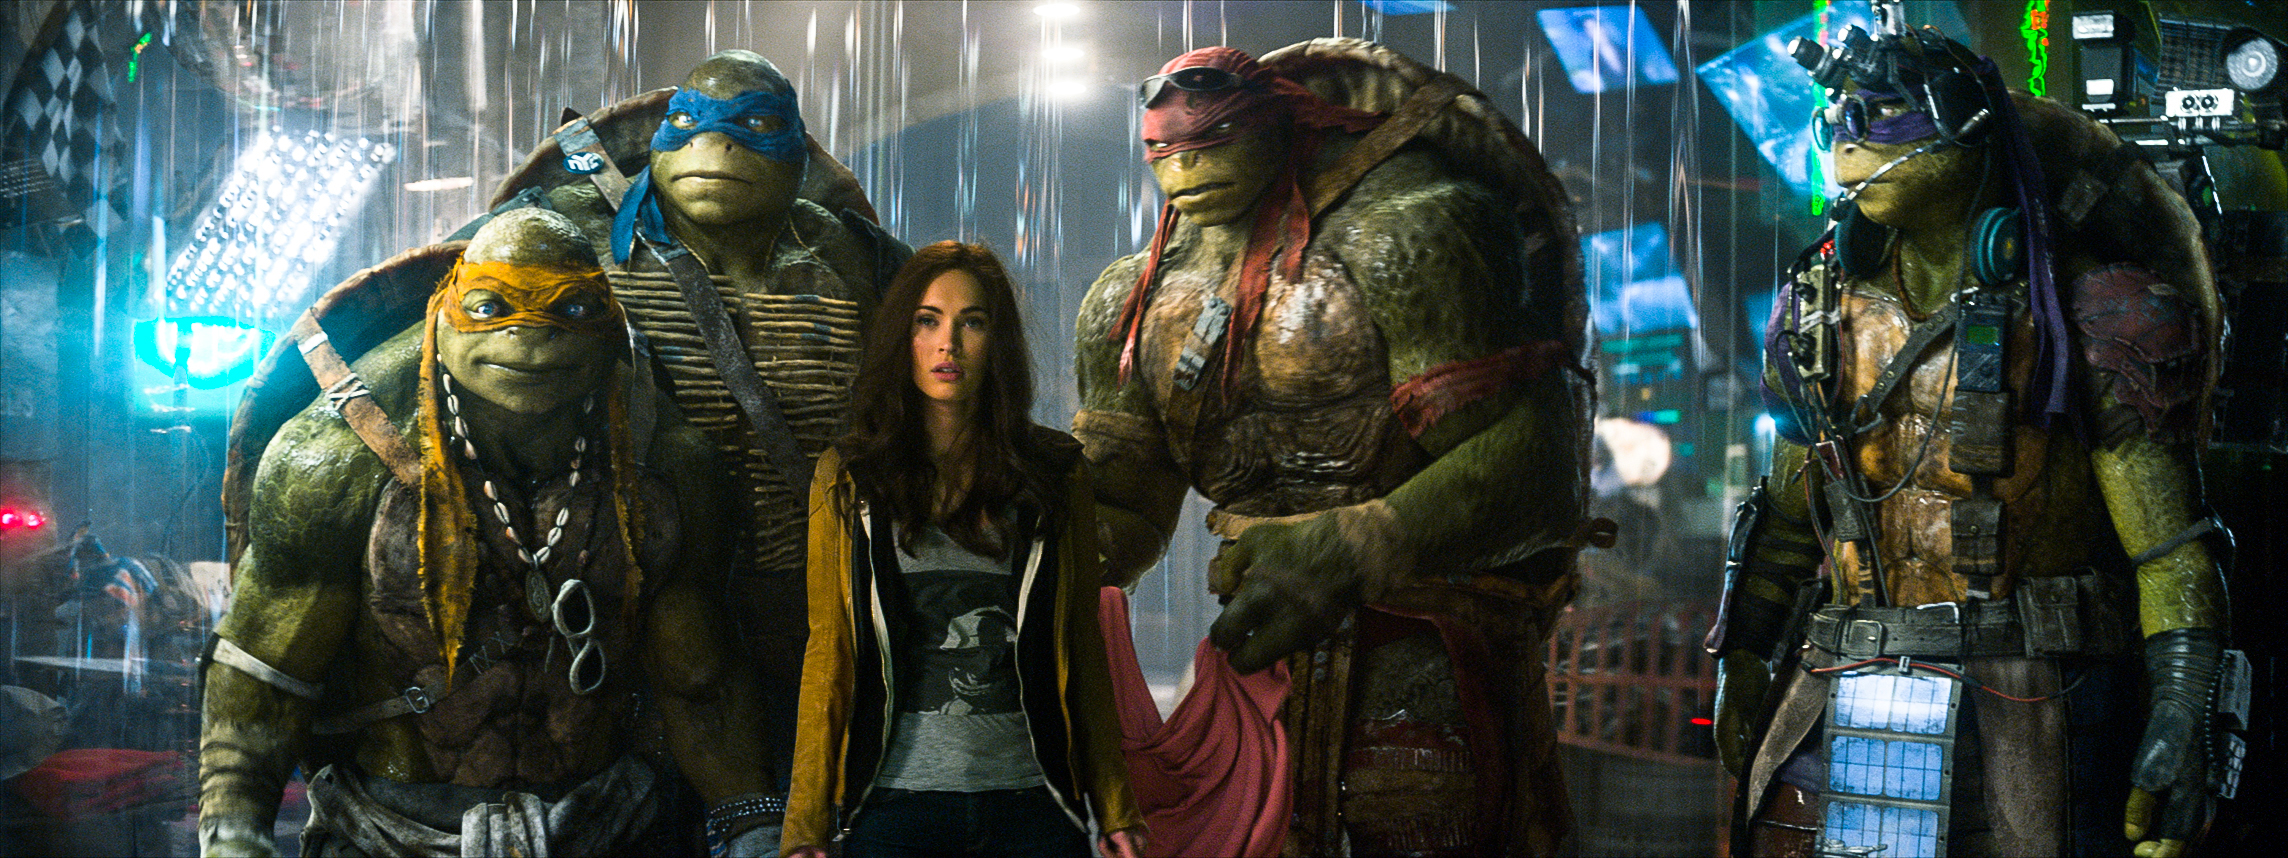 Megan Fox trẻ trung với vai nữ sinh trong ‘Ninja Rùa 2’